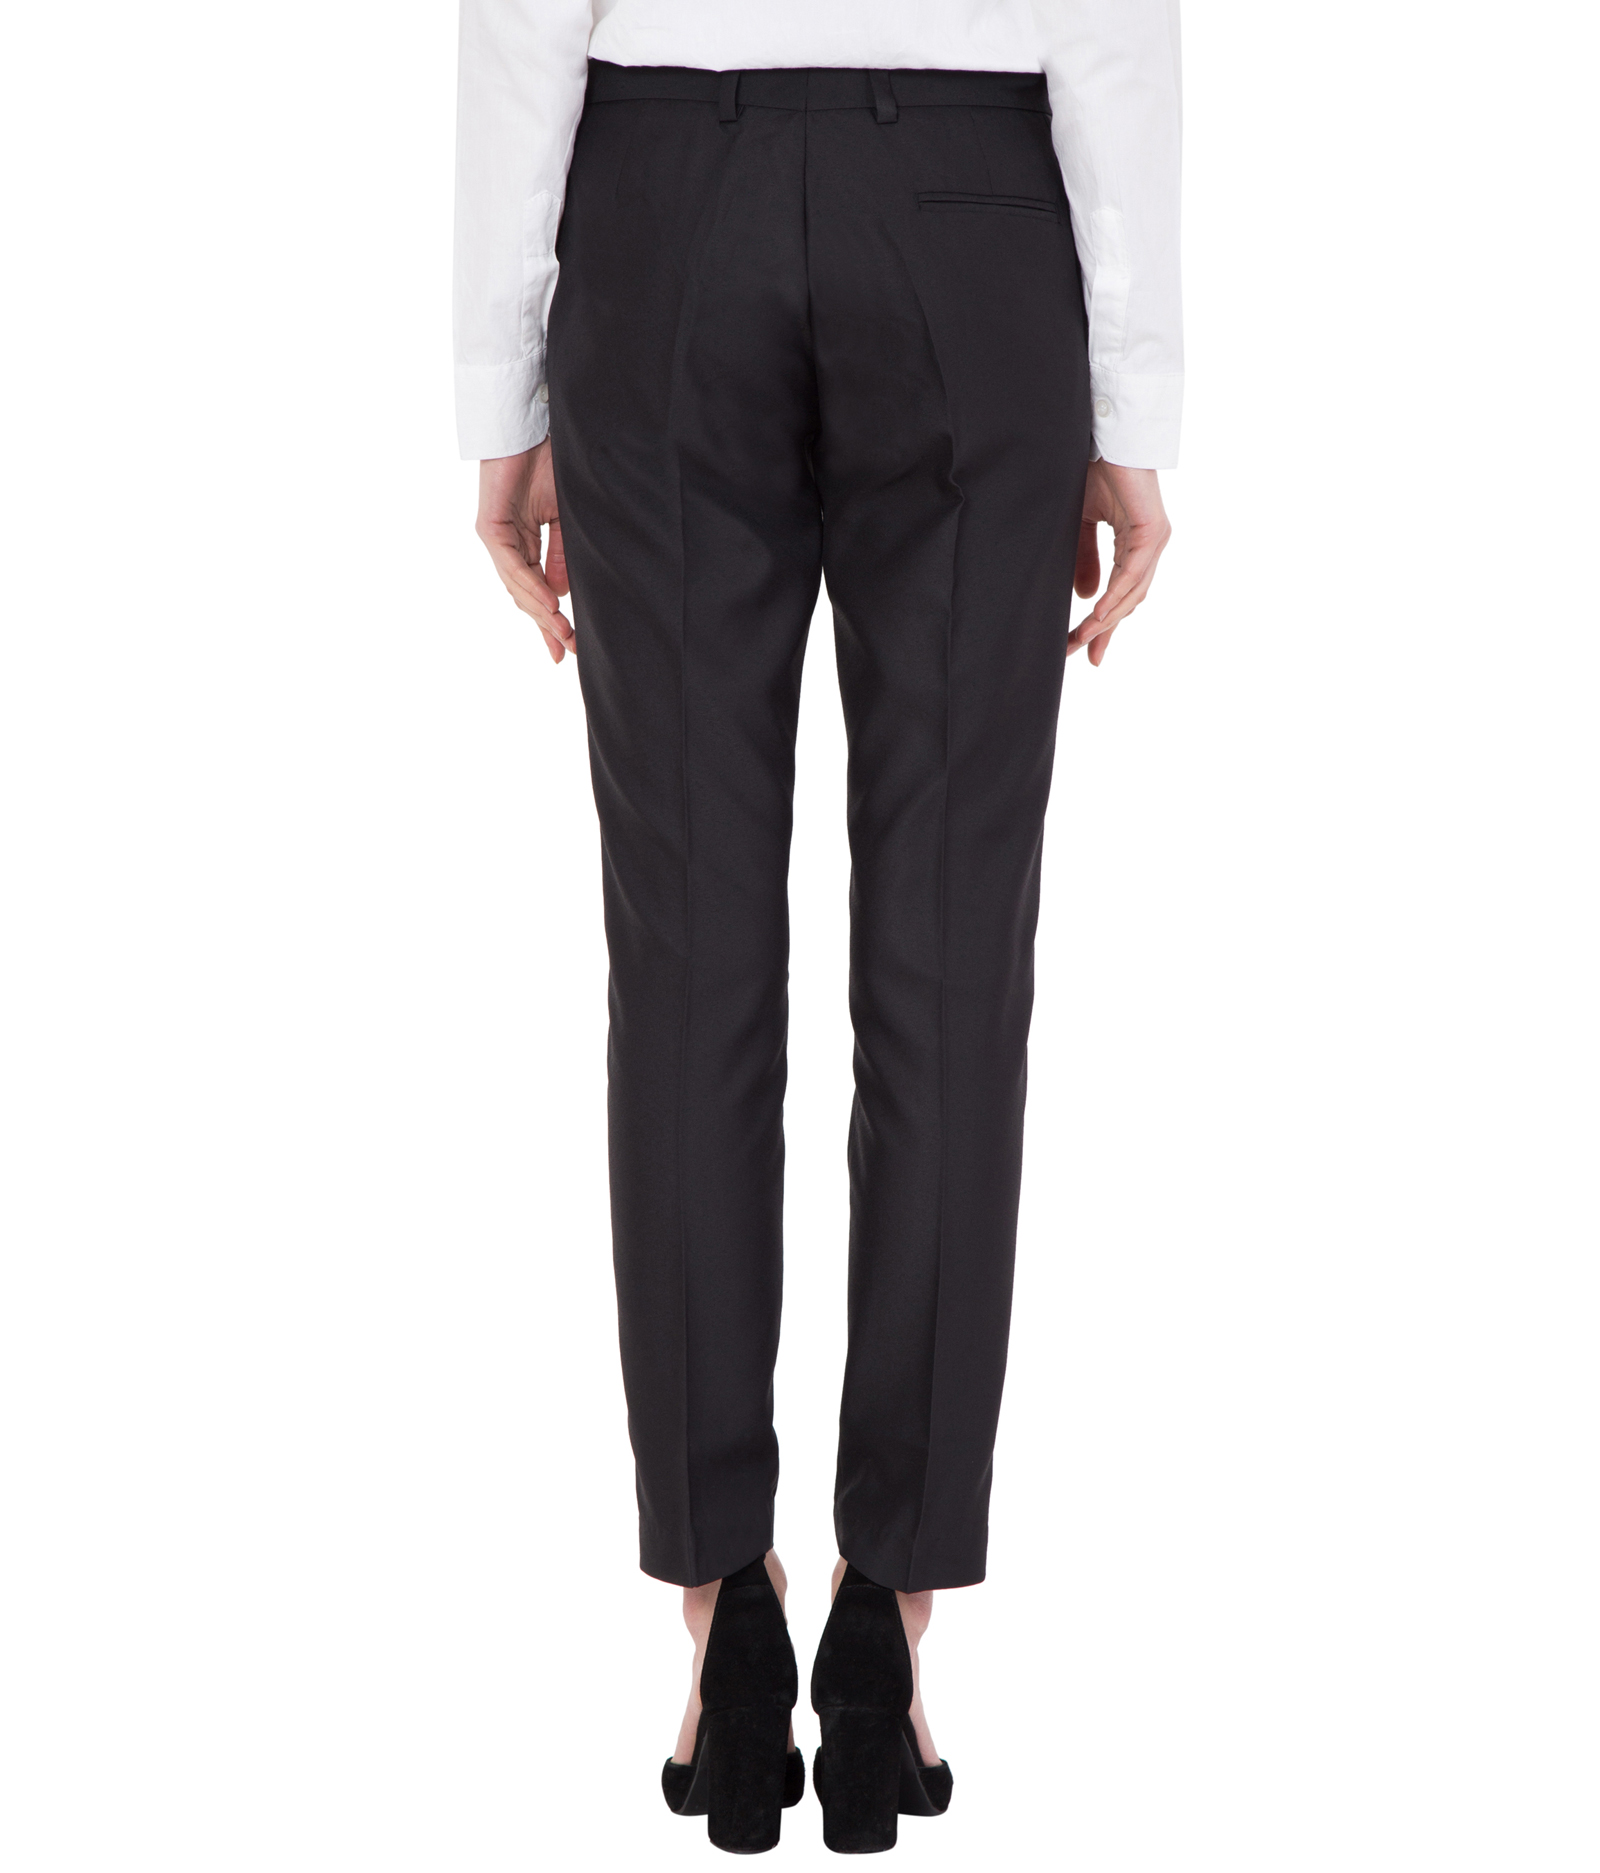 Buy Cliths Black Formal Trouser For Women/ Formal Pants For Women Ankle ...